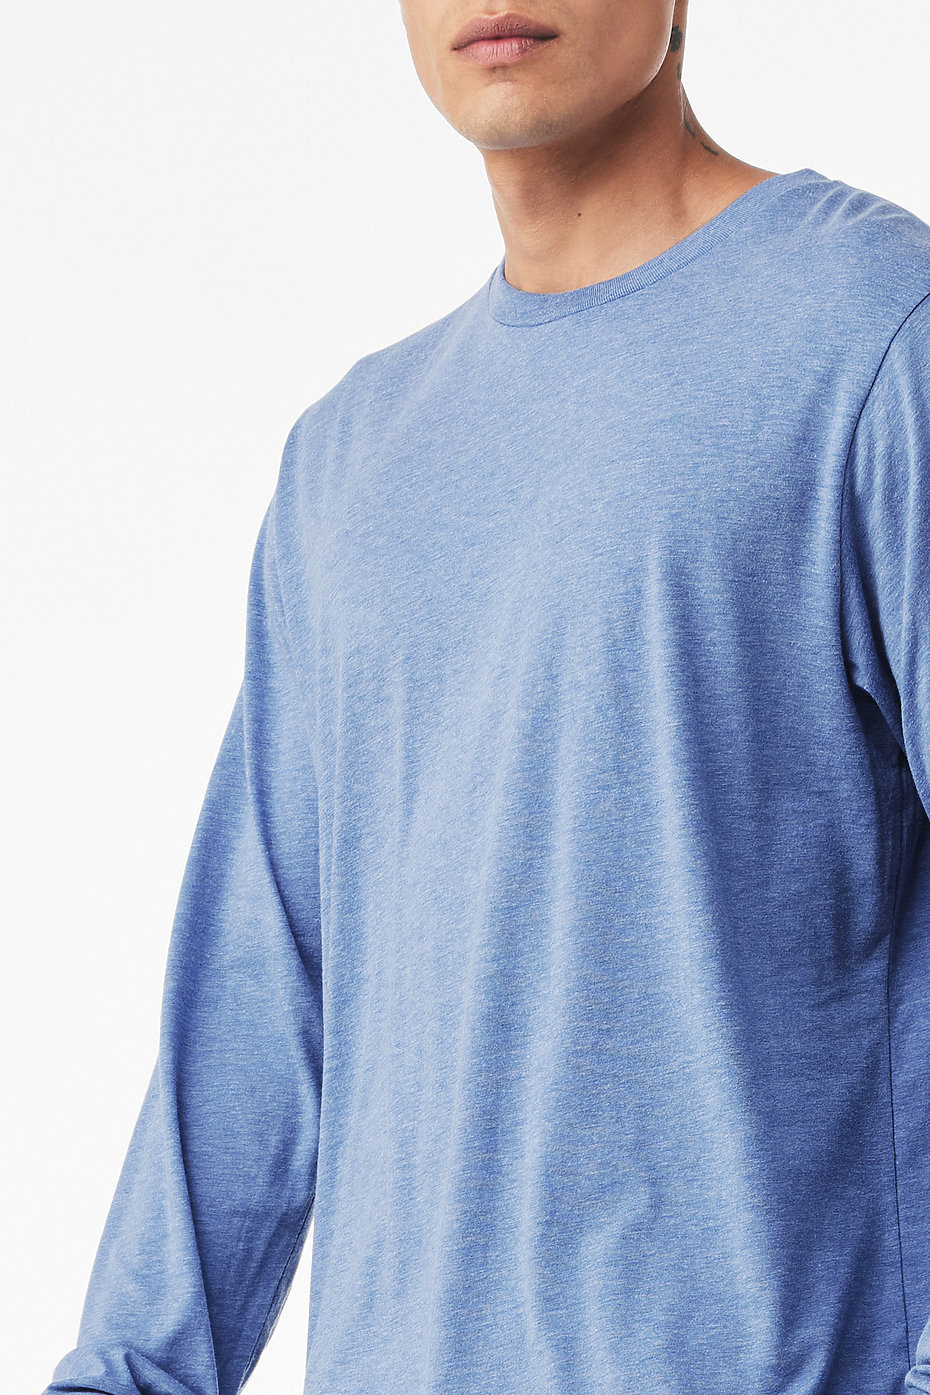 Men's Lightweight Long Sleeve Jersey - Blue Line